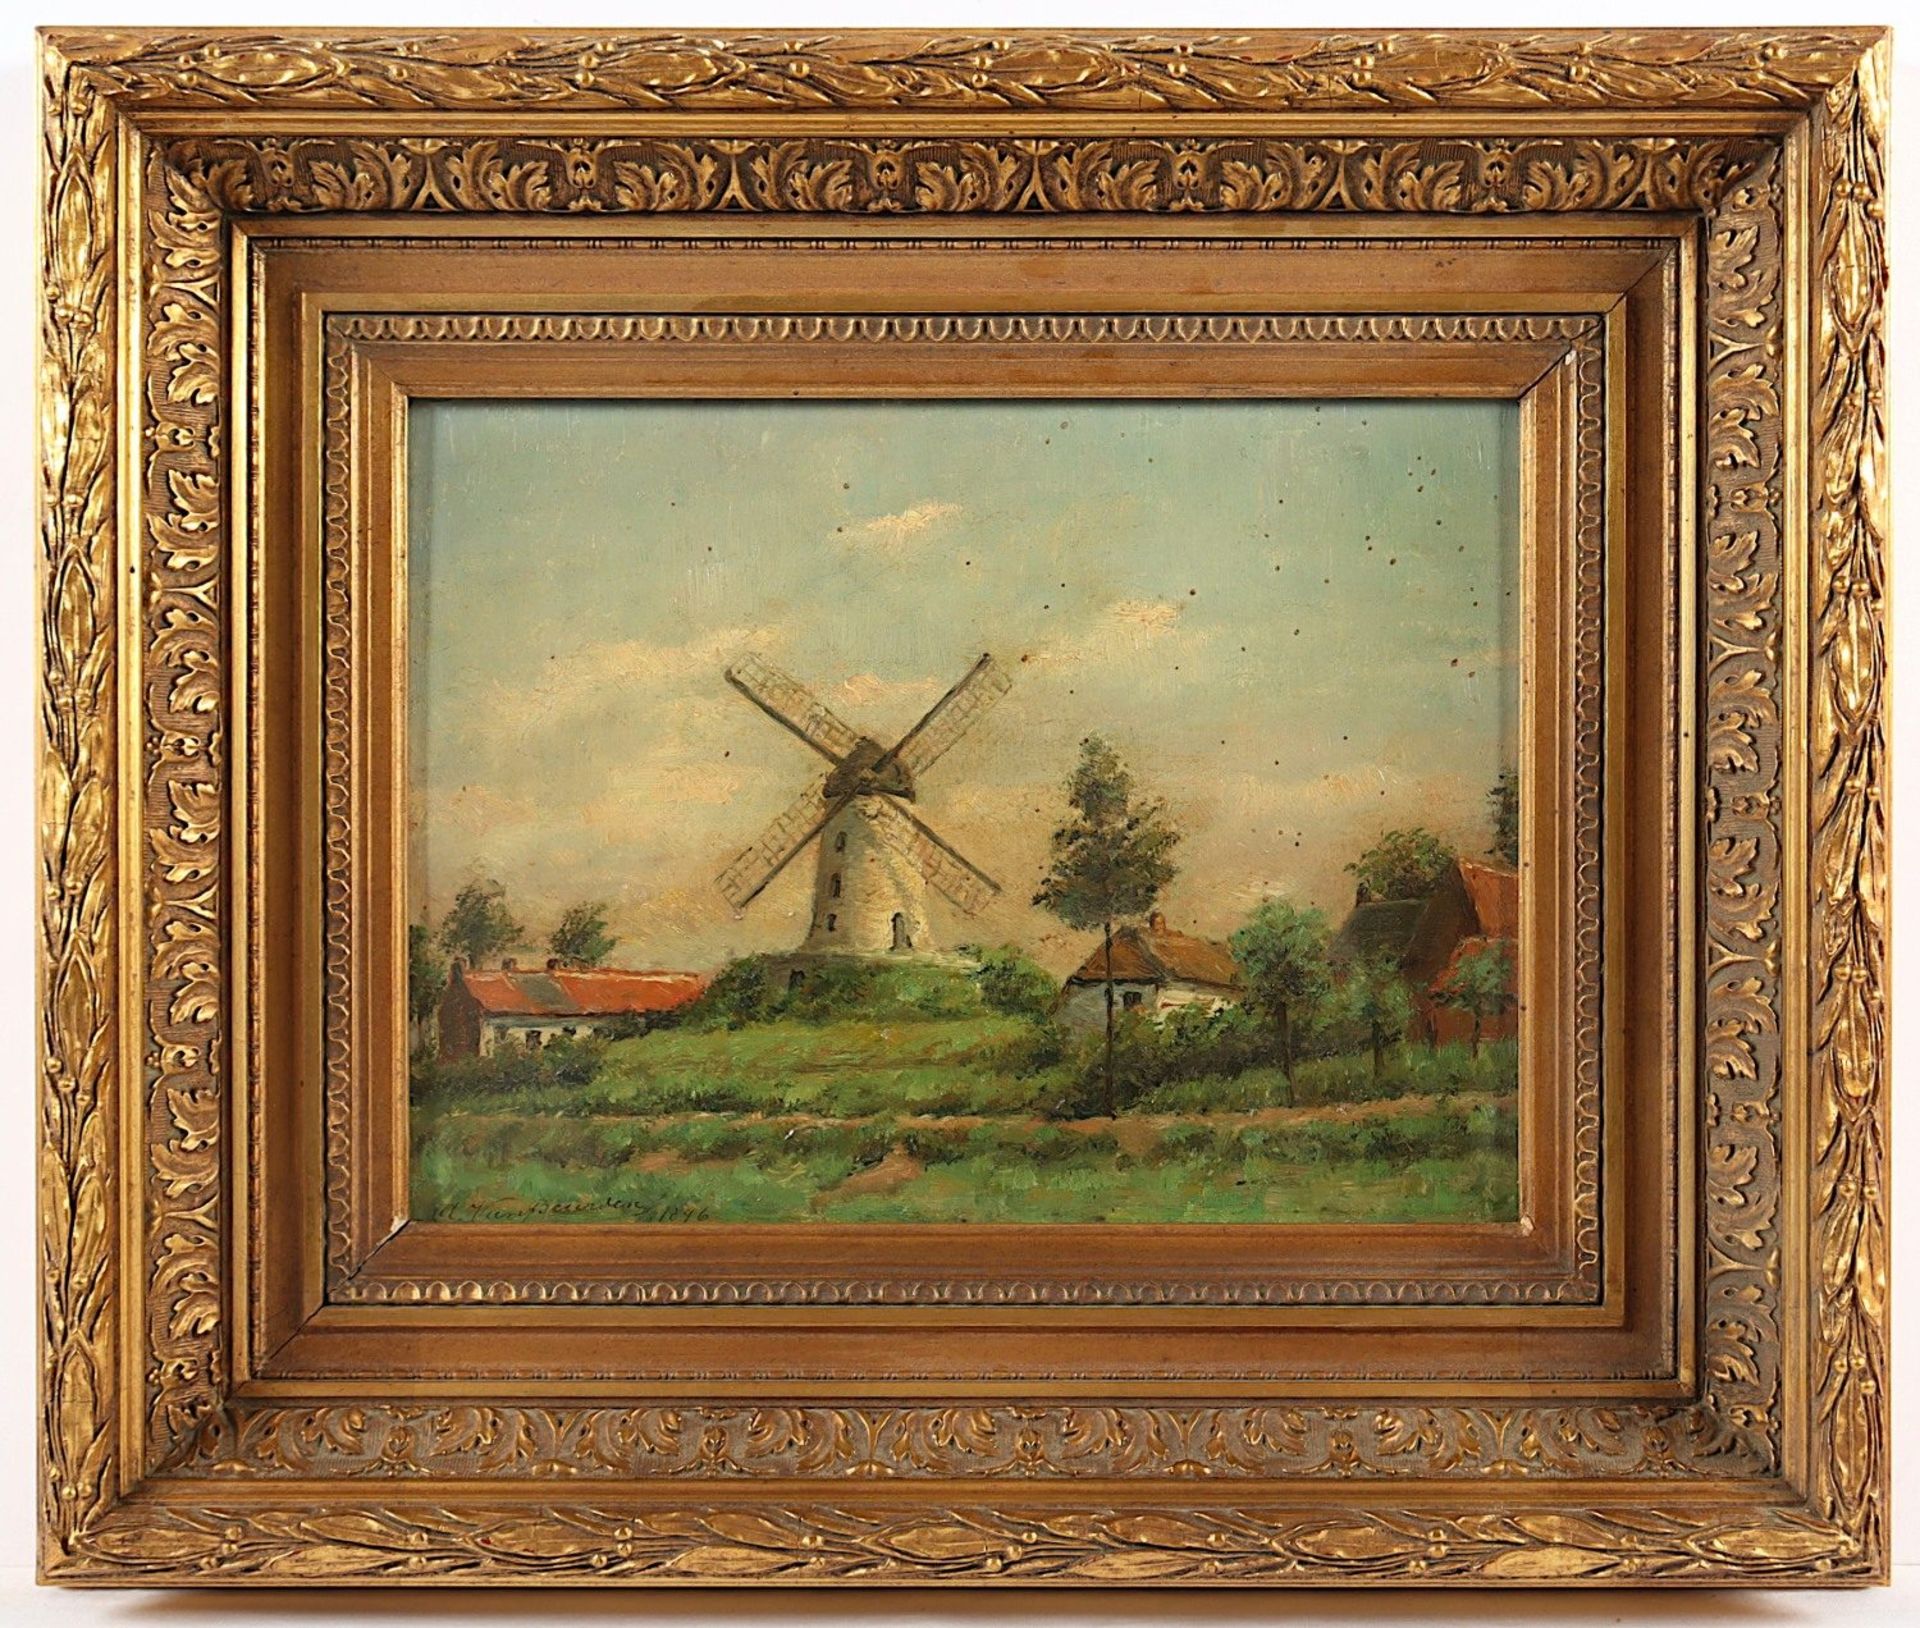 VAN BEURDEN, Alphonse II (1878-1961), "Niederländische Landschaft mit Windmühle", Öl/Holz, 24,5 x